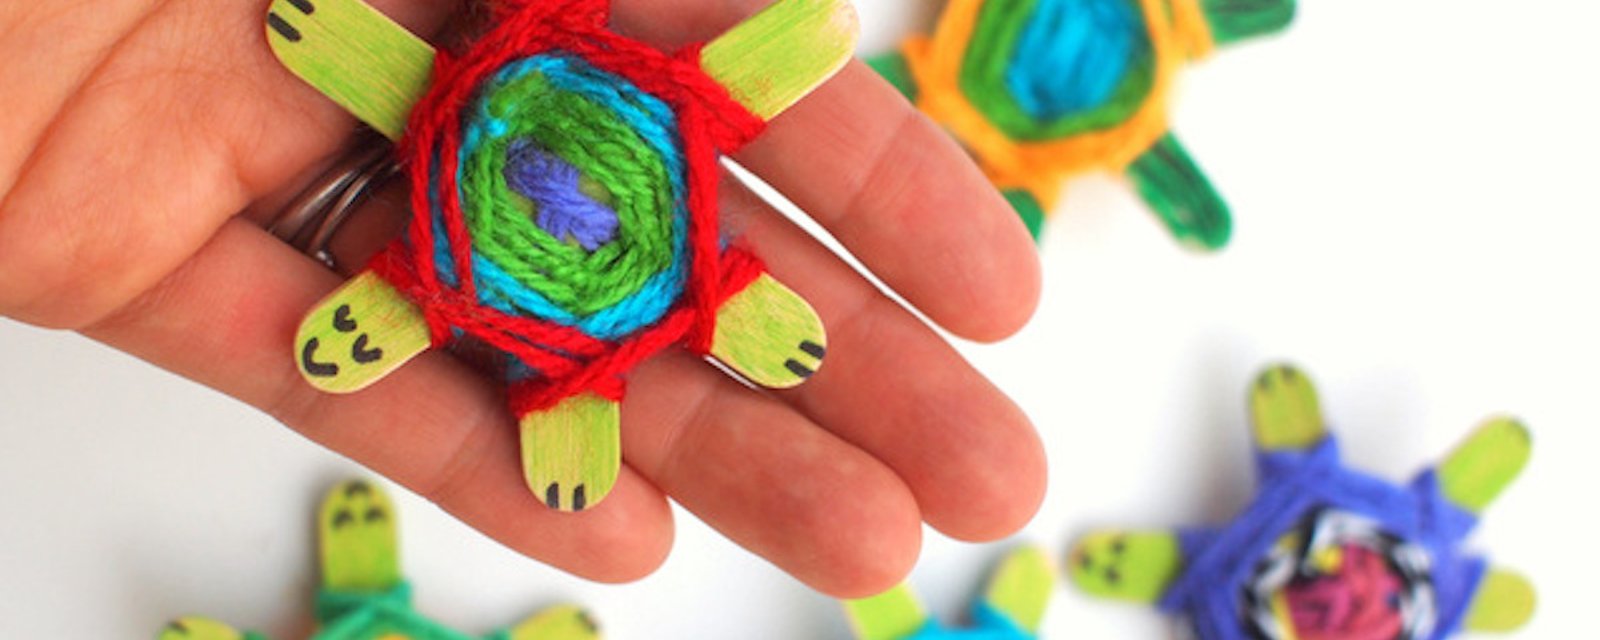 Comment fabriquer d'adorables tortues avec des bâtons de popsicles et du fil